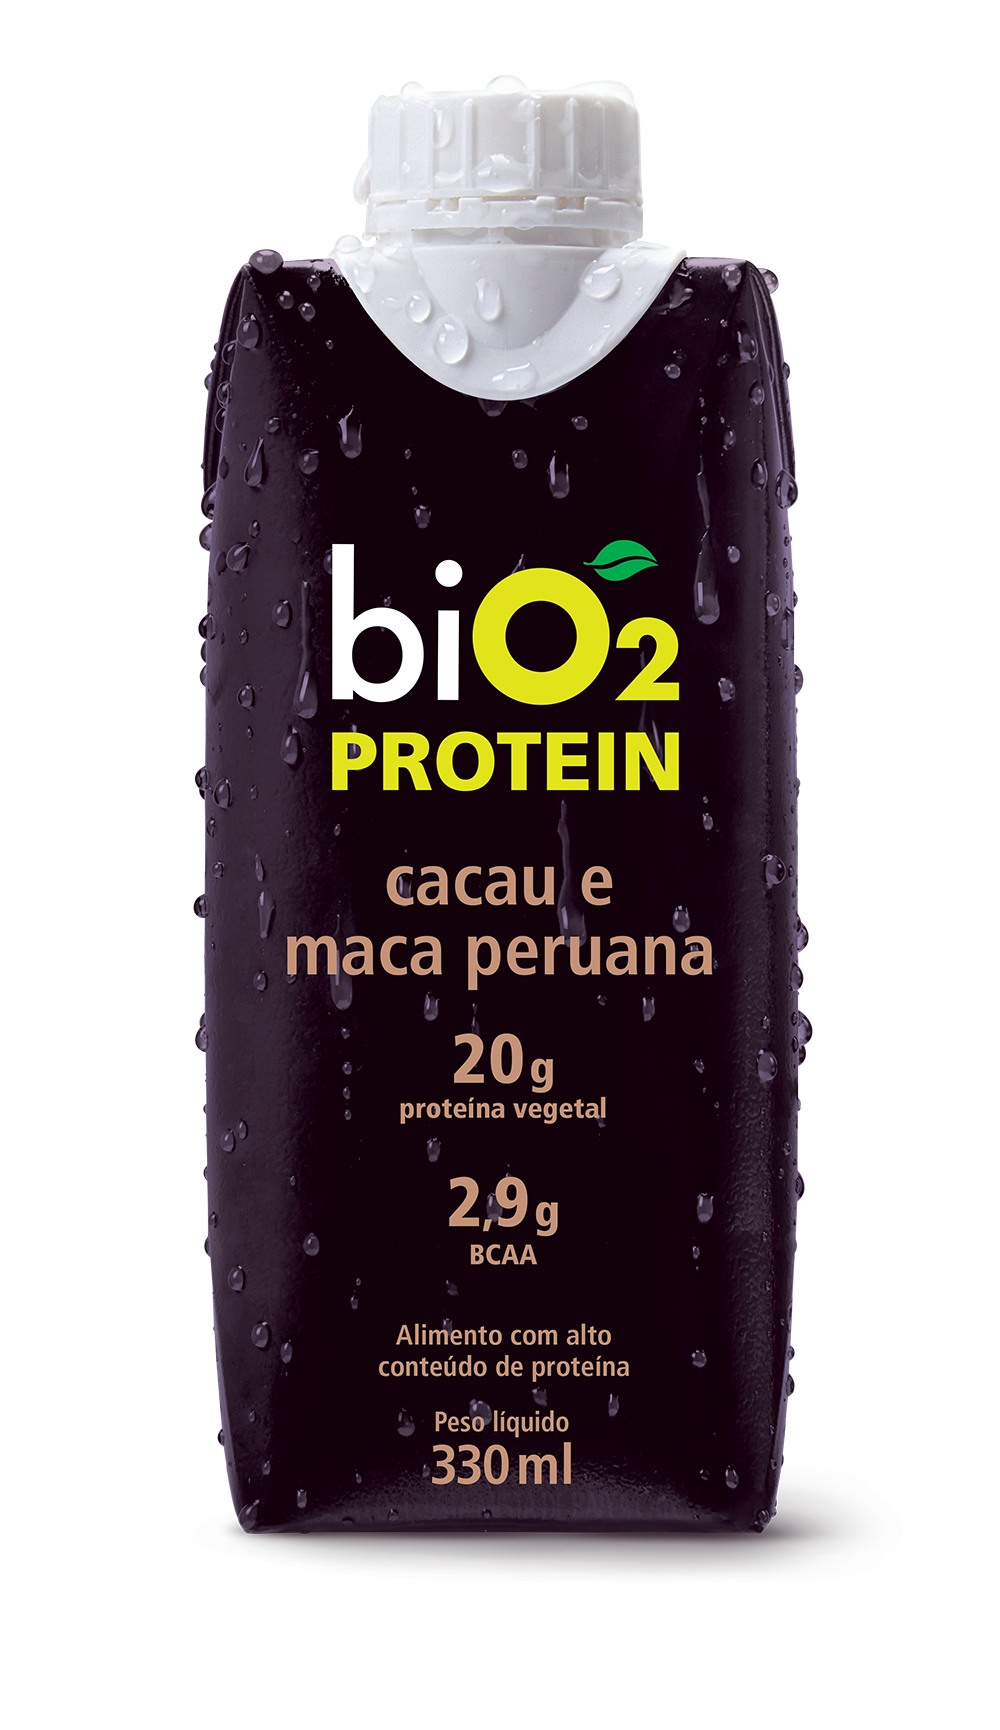 Bio2 (Foto: Divulgação)